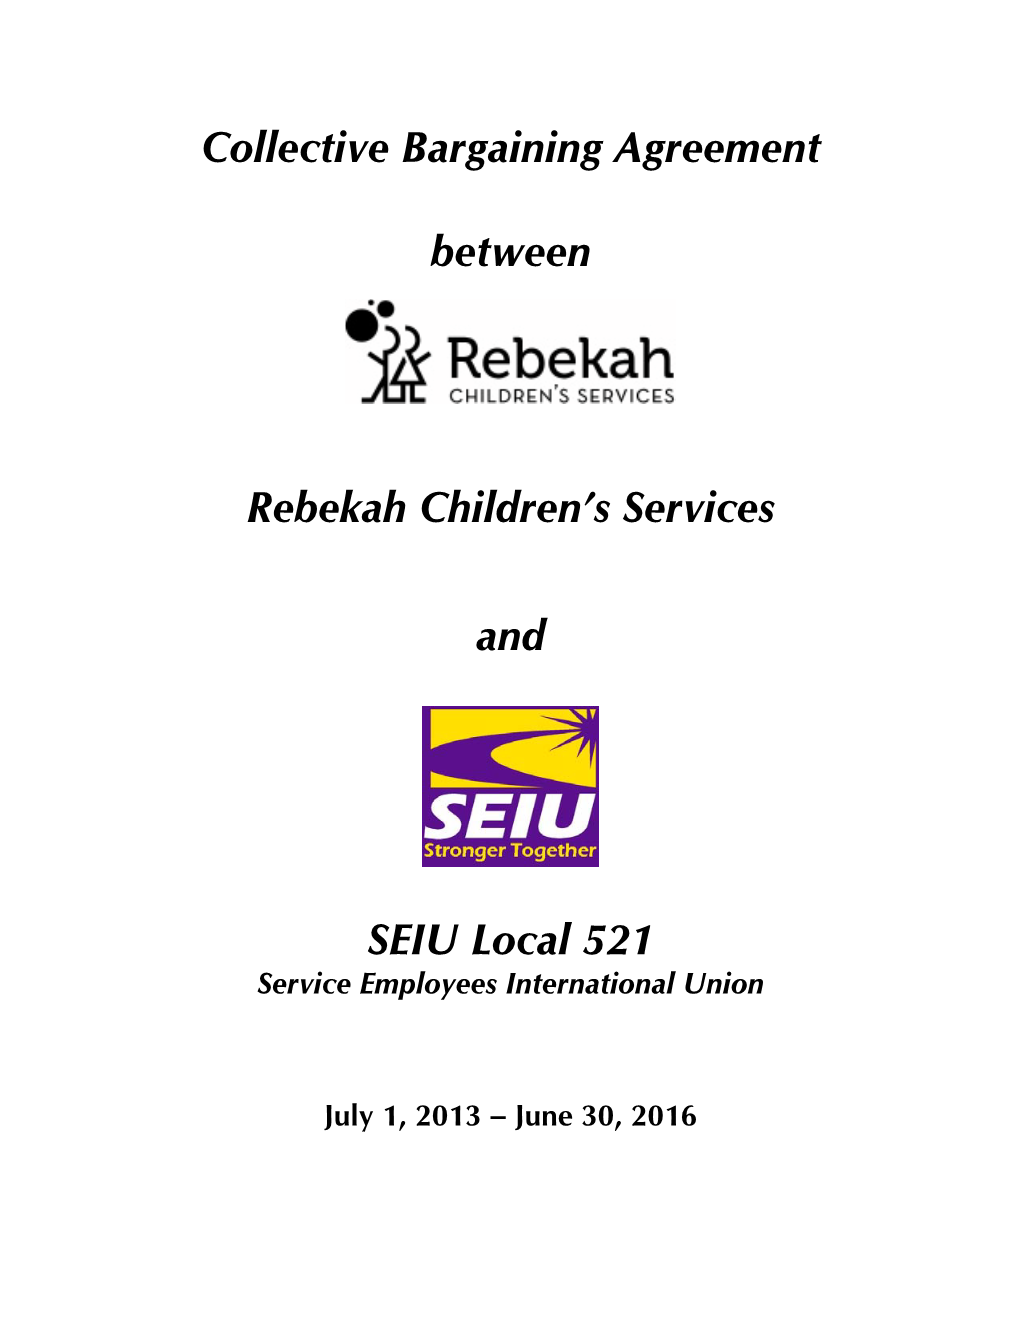 Collective Bargaining Agreement Between Rebekah Children's